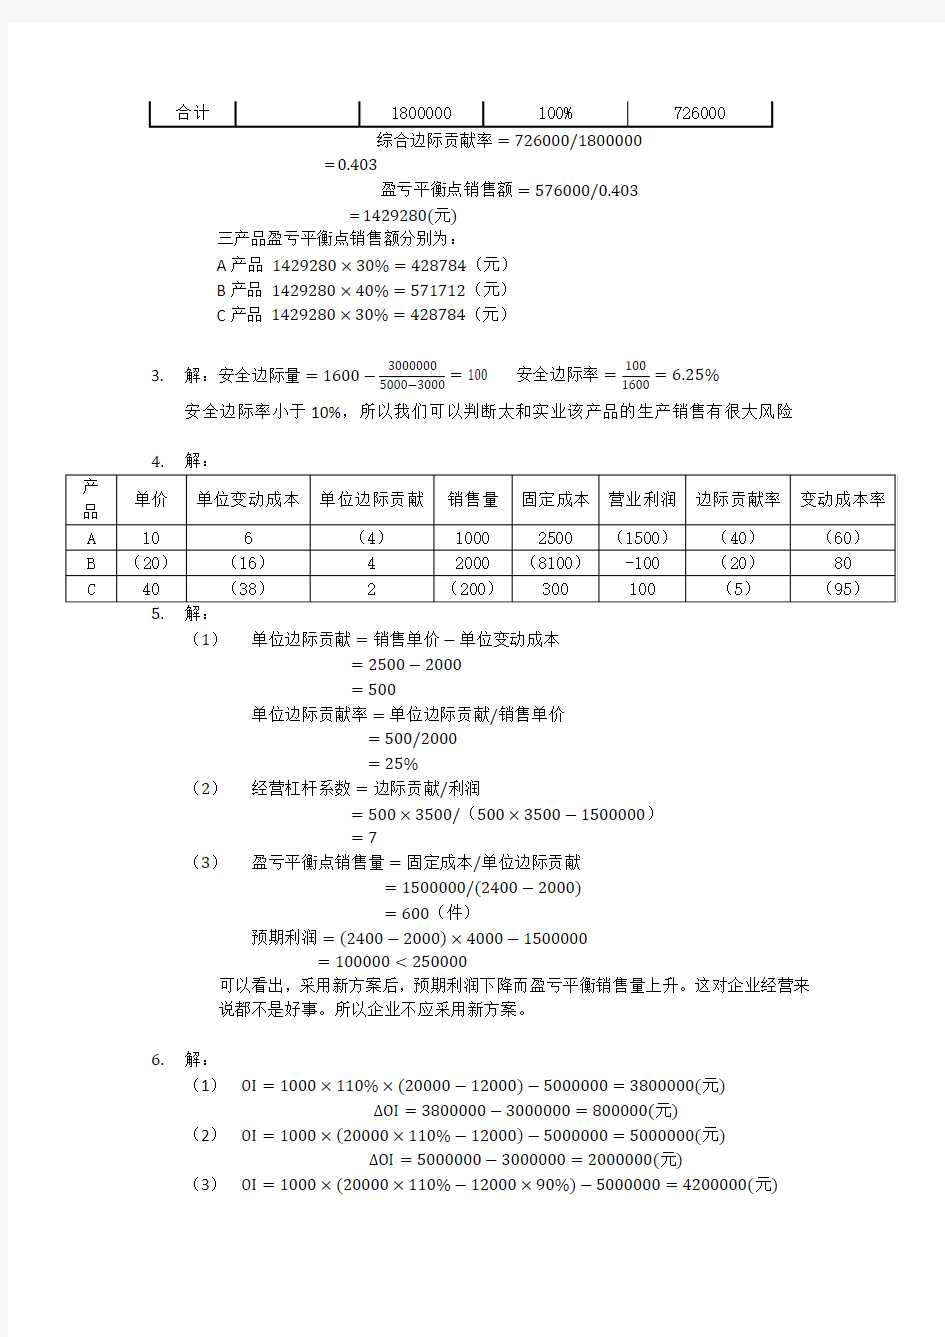 刘运国《管理会计学》教材习题及答案   第四章  习题答案